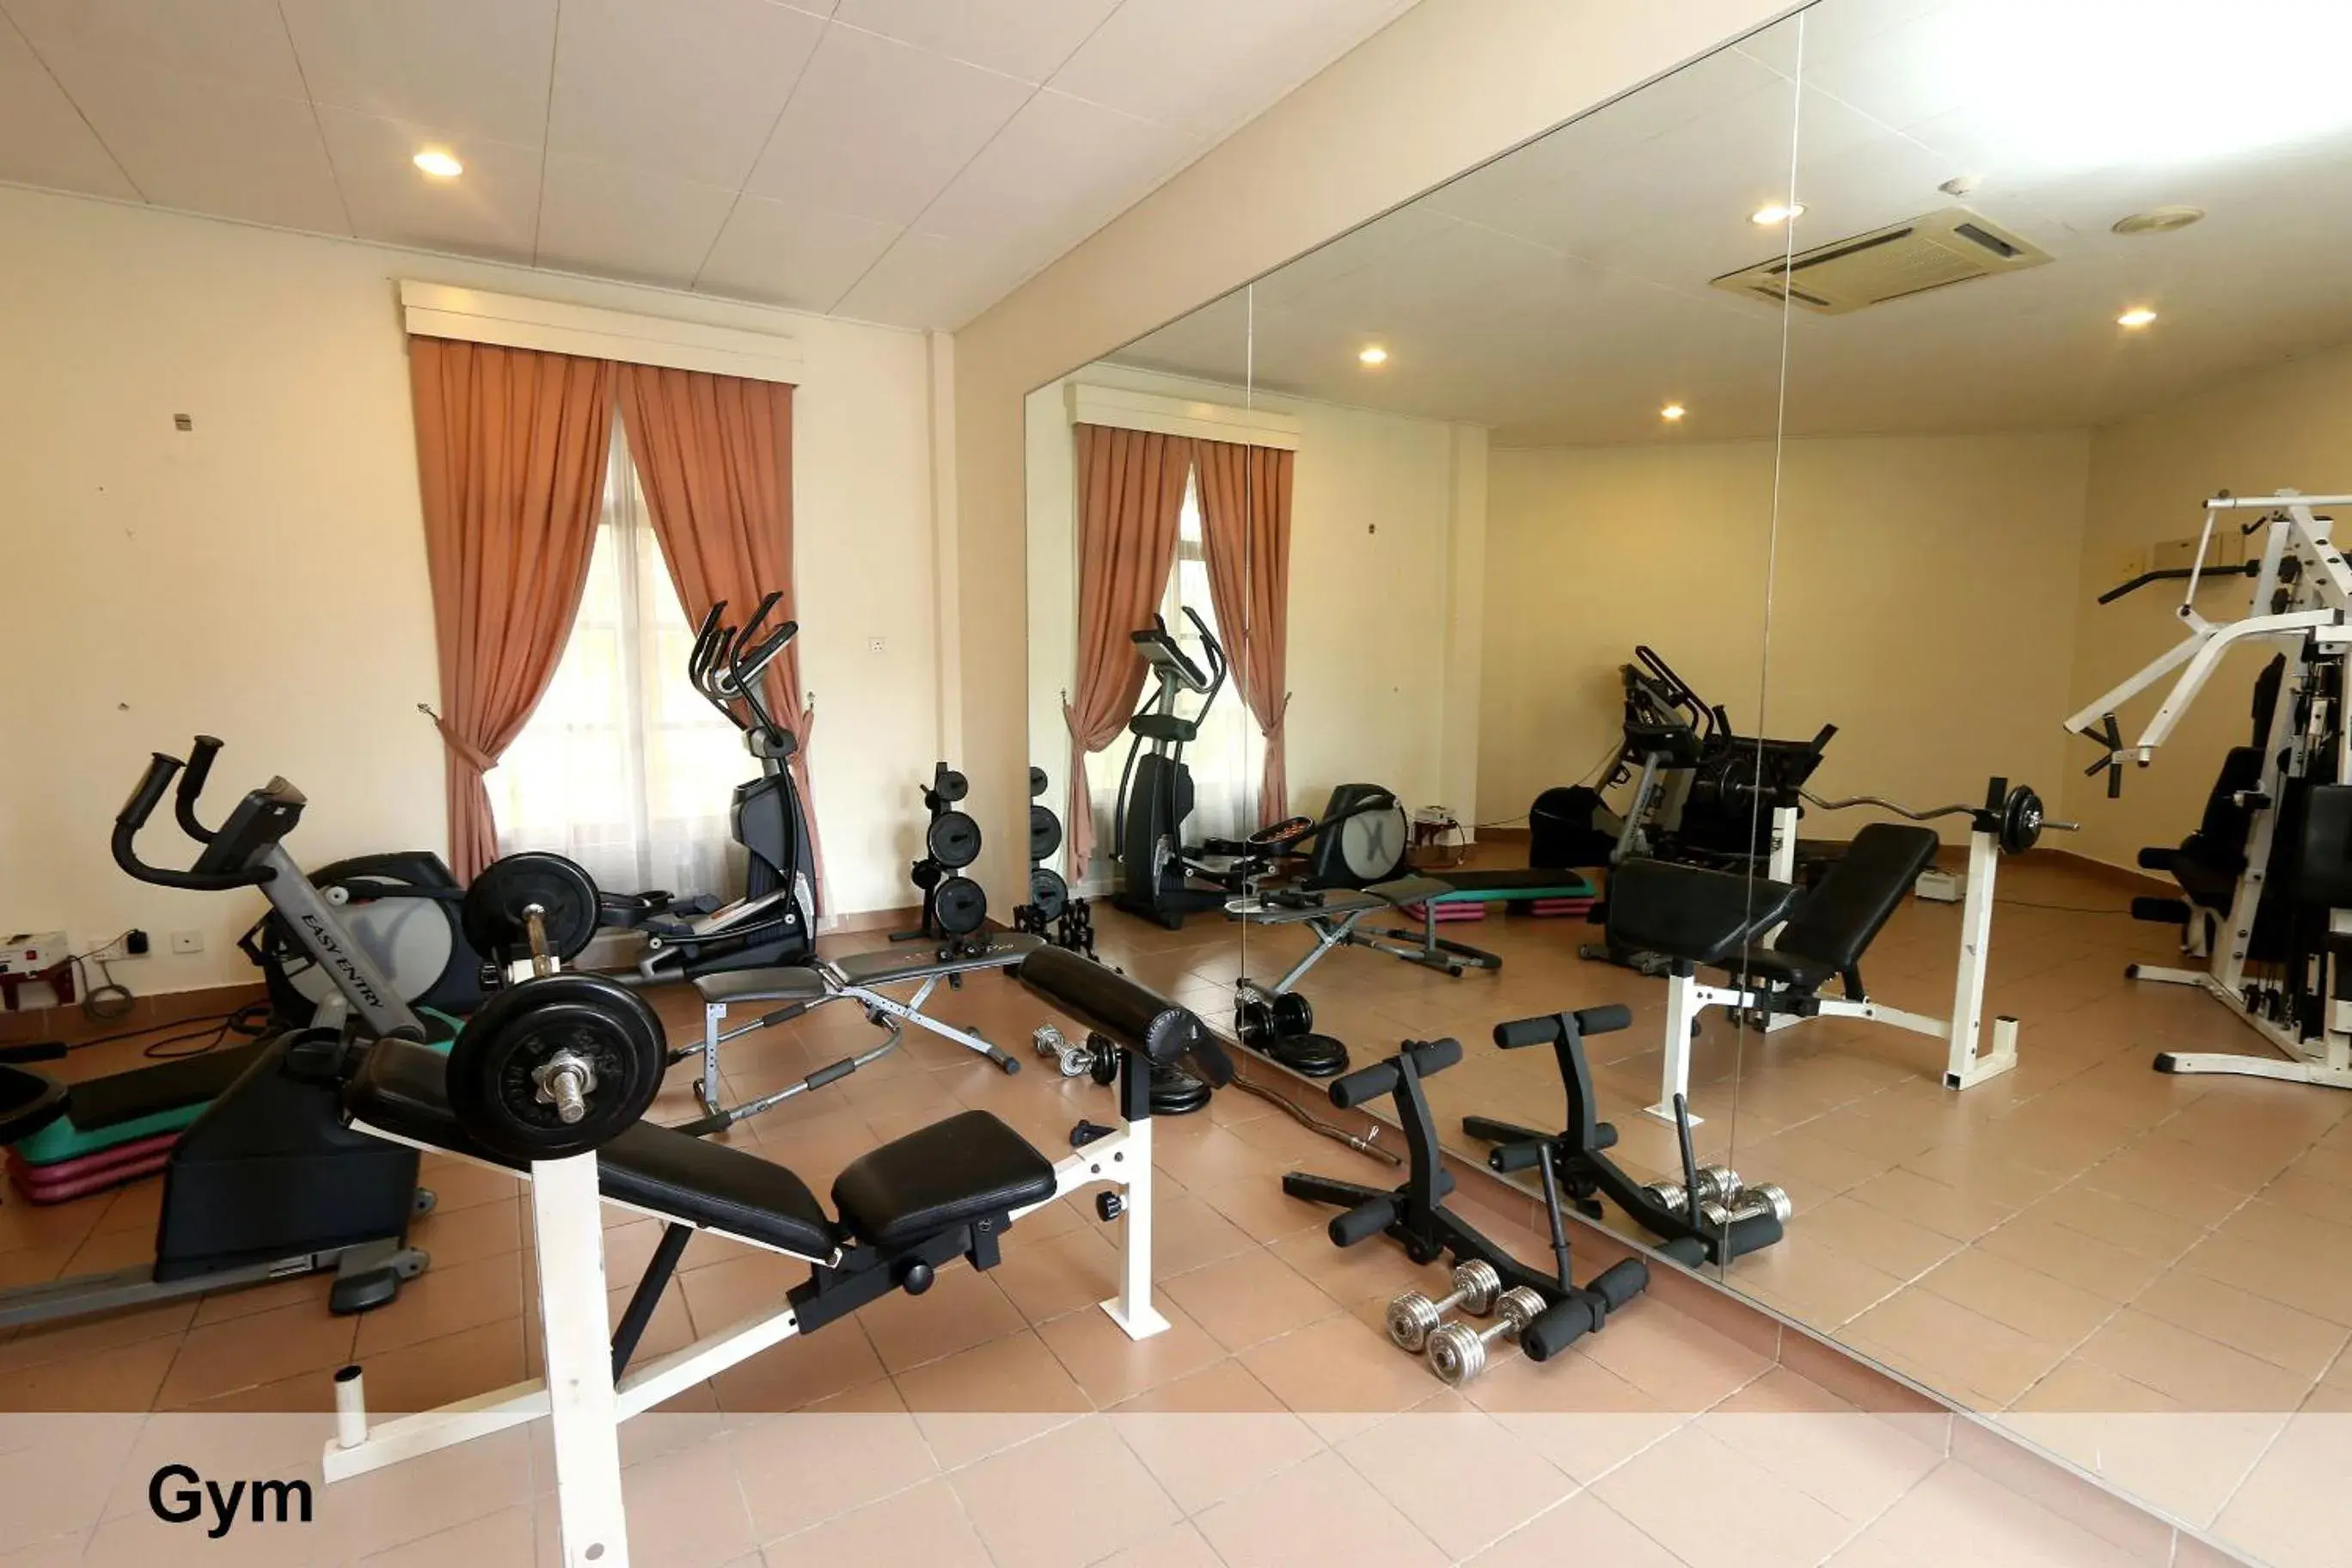 Fitness centre/facilities, Fitness Center/Facilities in Villea Morib